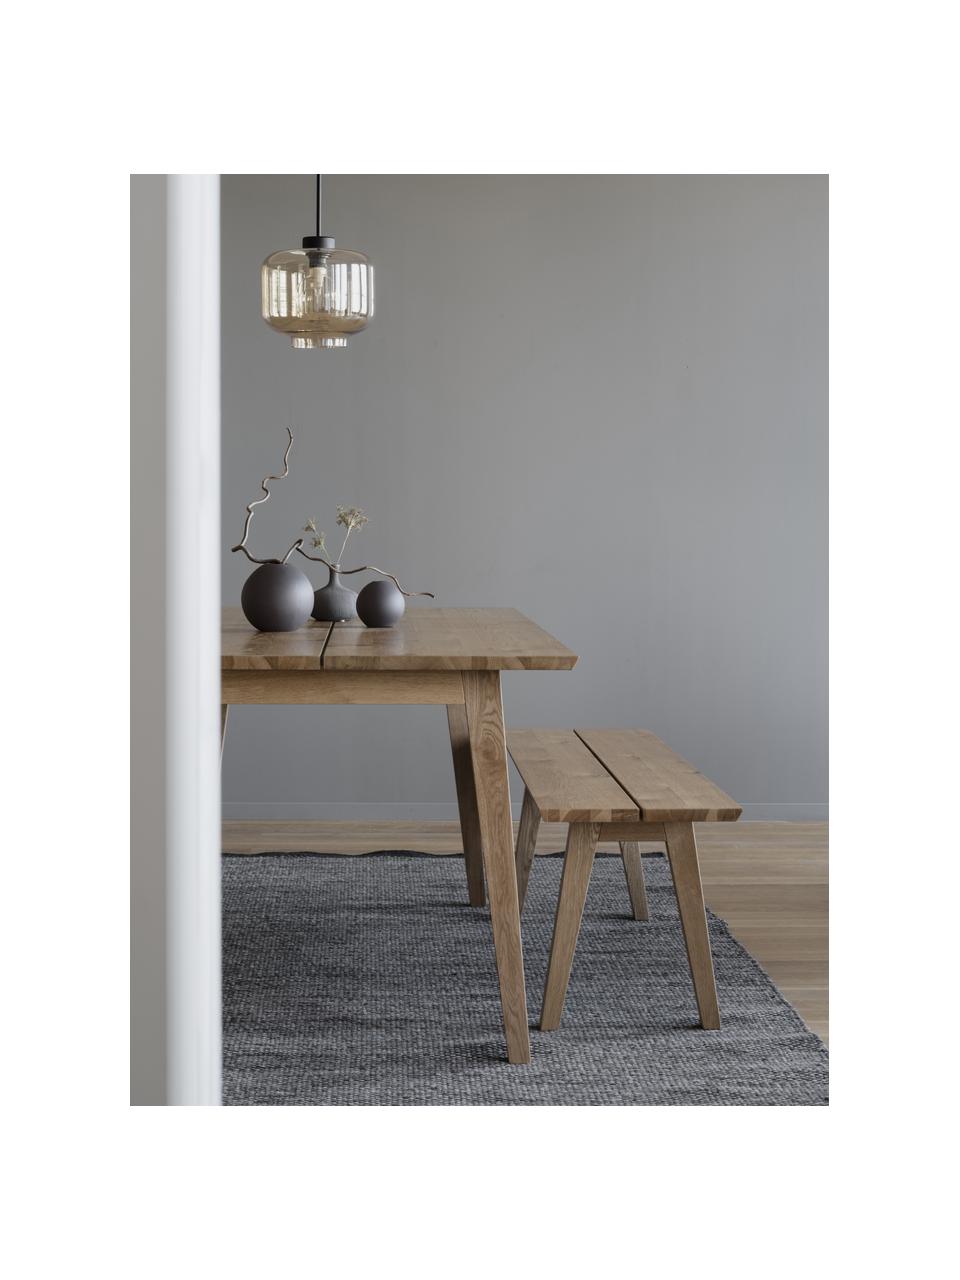 Rozkládací jídelní stůl Melfort, 180-280 x 90 cm, Dřevo, Š 180 až 280, H 90 cm